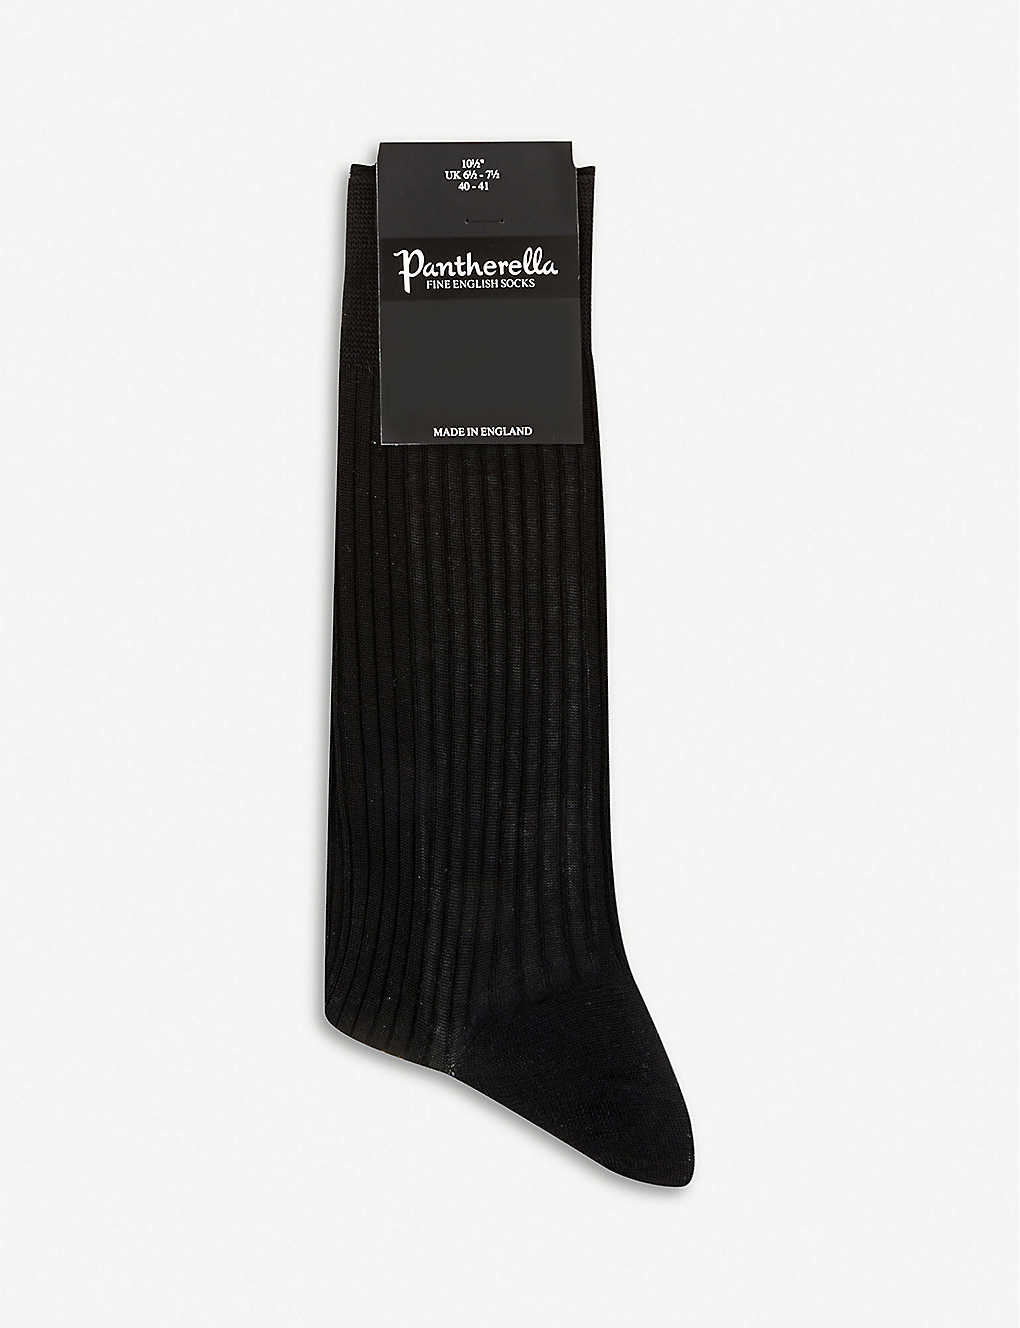 Pantherella Mens Black Short Ribbed Cotton Socks